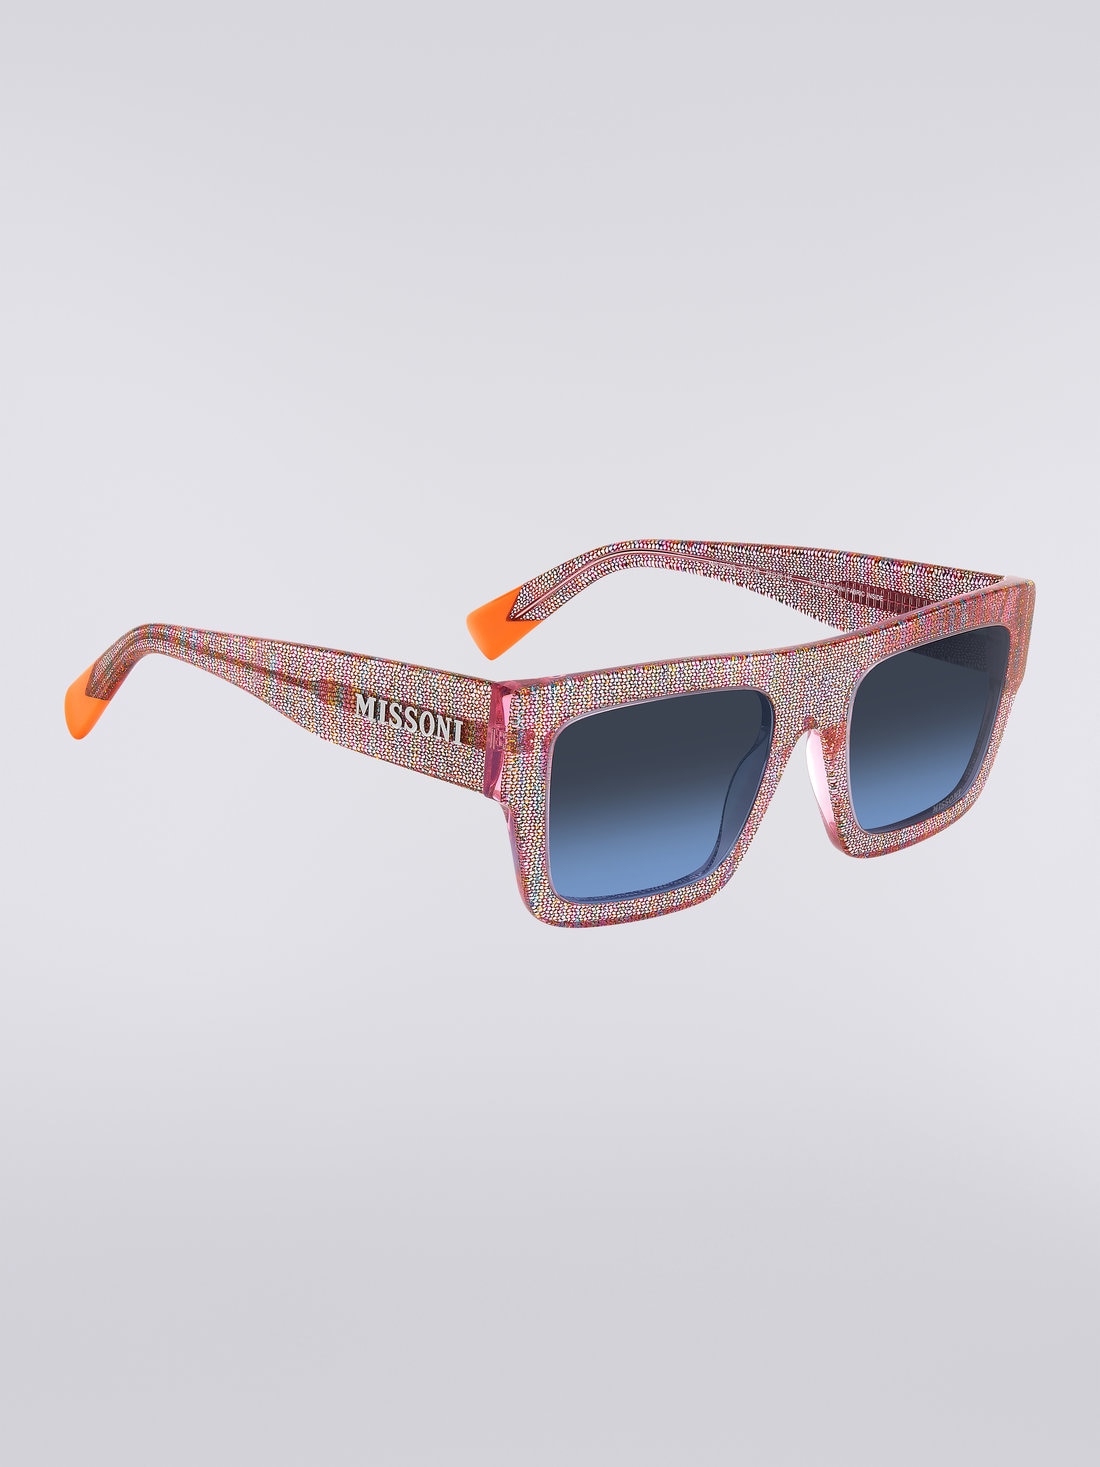 Missoni Dna Acetate Sunglasses, Multicoloured  - 8051575840289 - 2